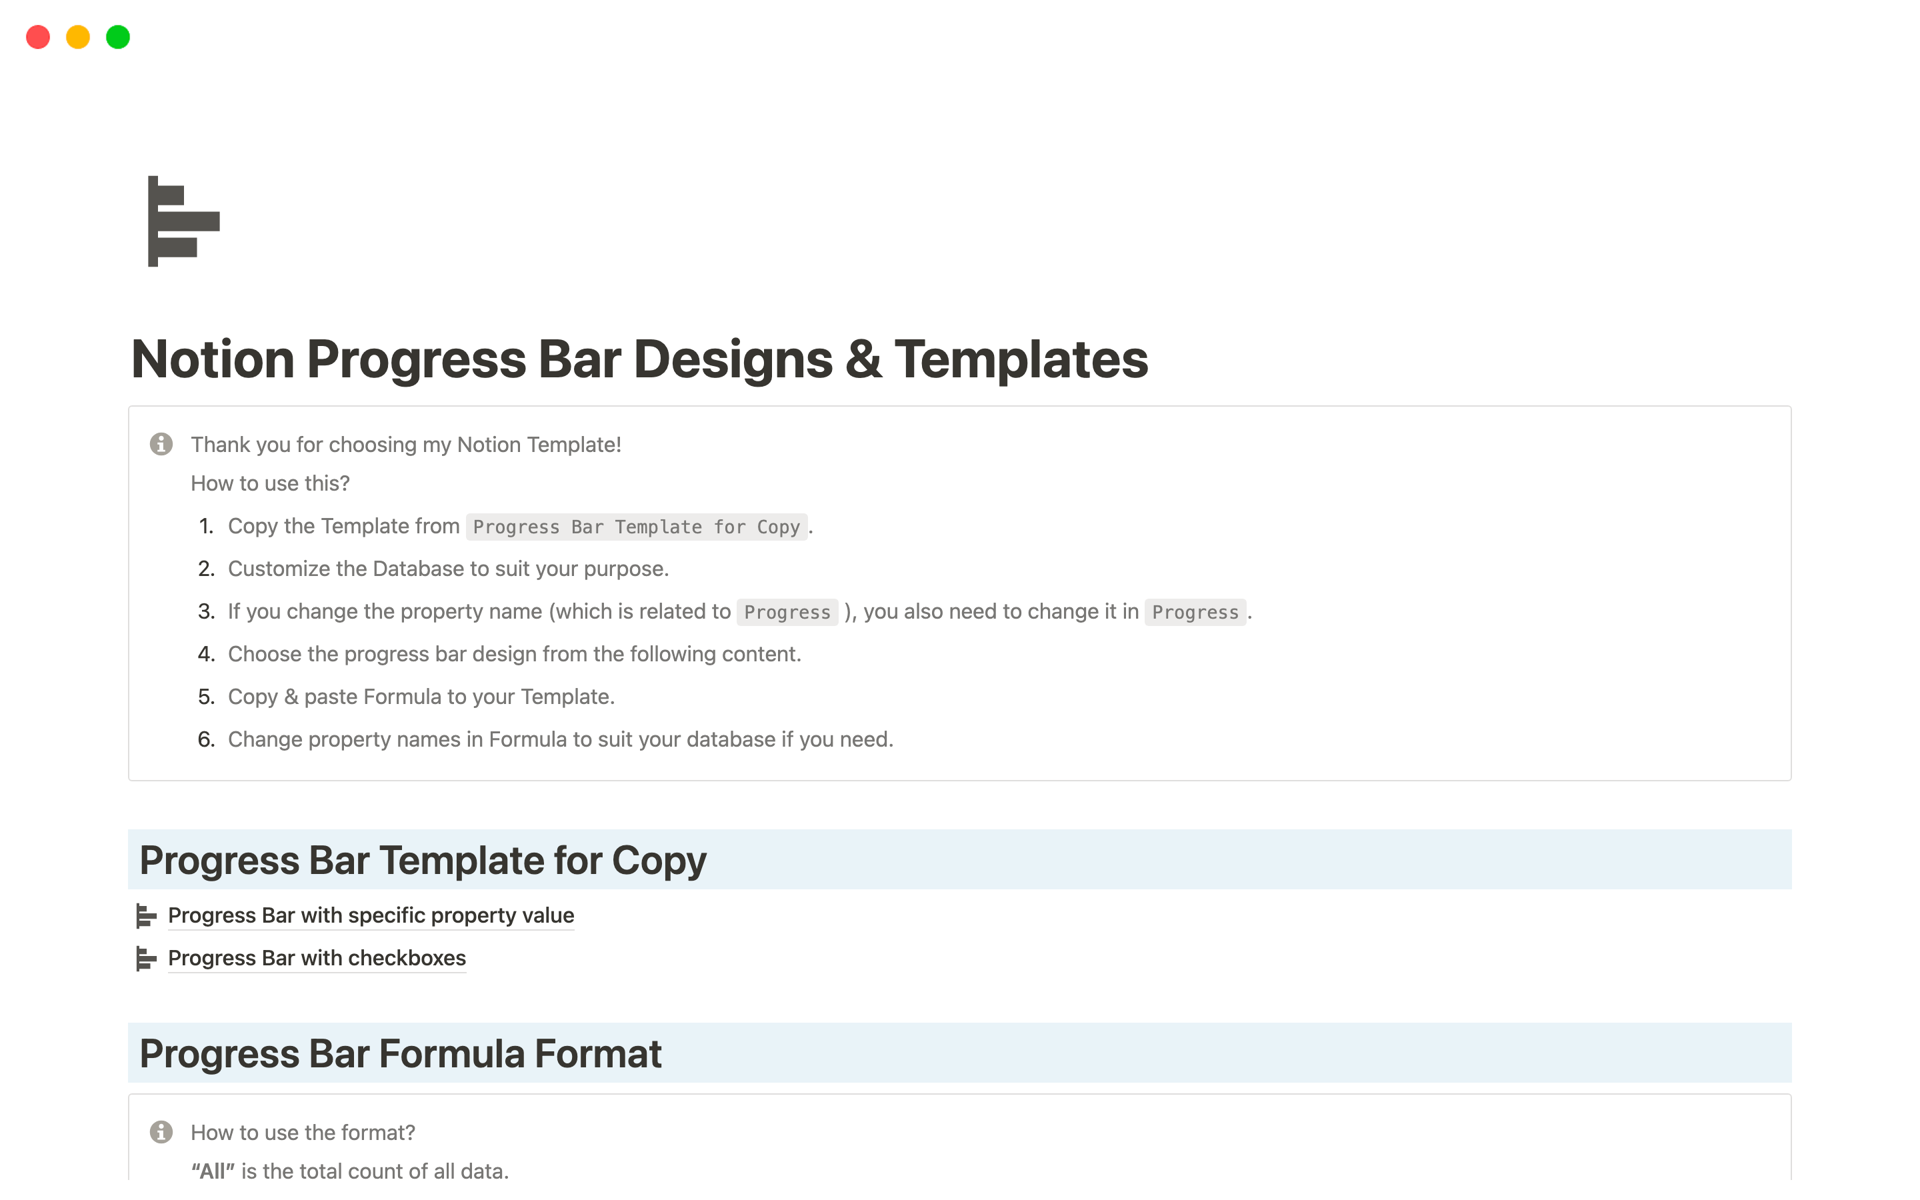 En förhandsgranskning av mallen för Notion Progress Bar Designs & Templates